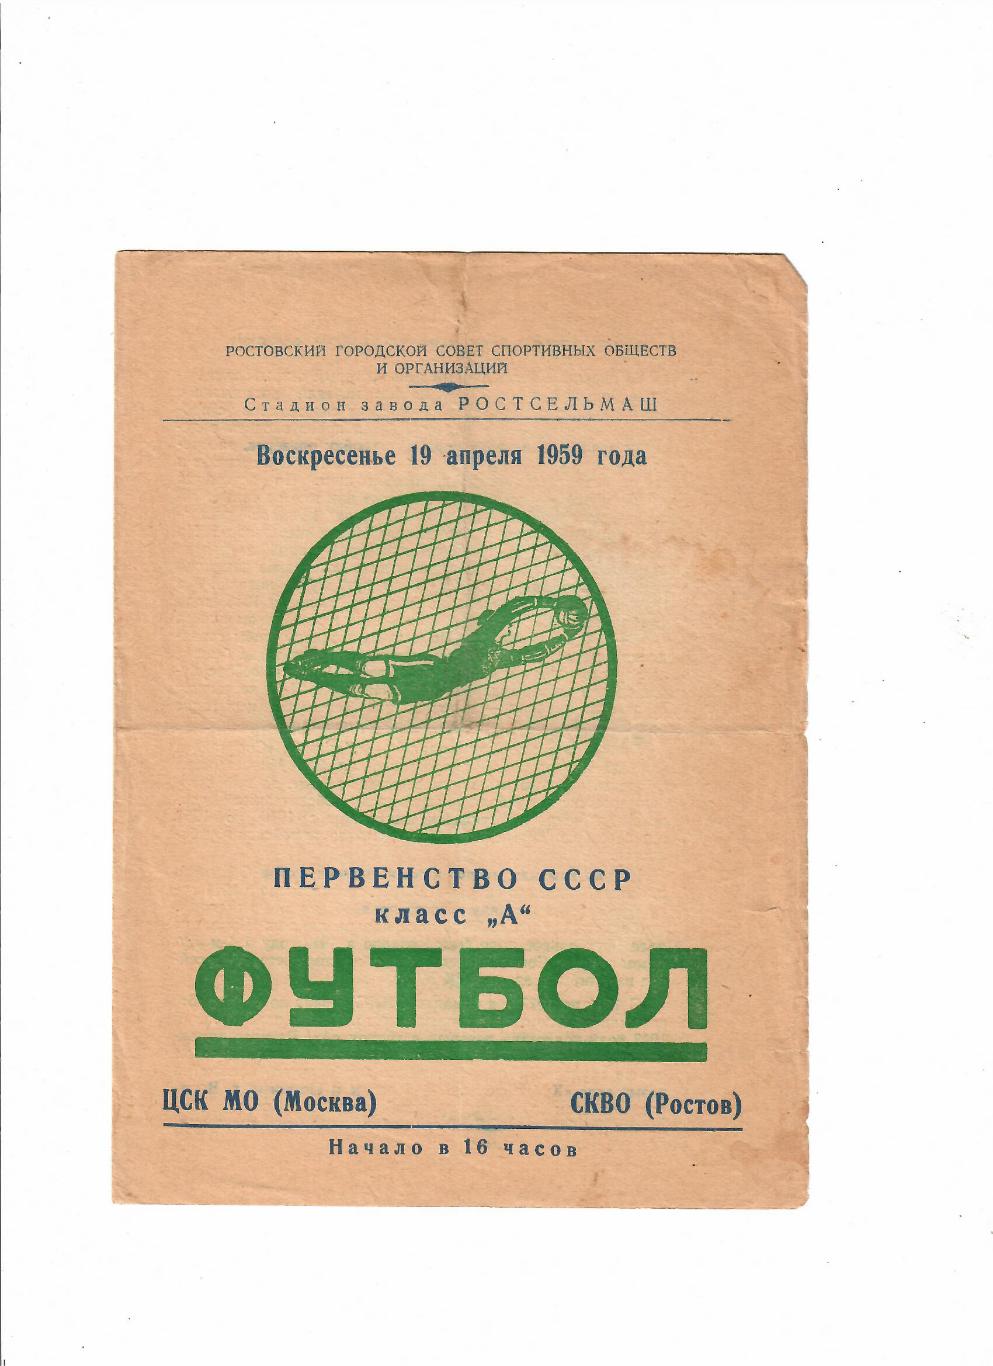 СКВО(СКА) Ростов-ЦСК МО(ЦСКА) 1959